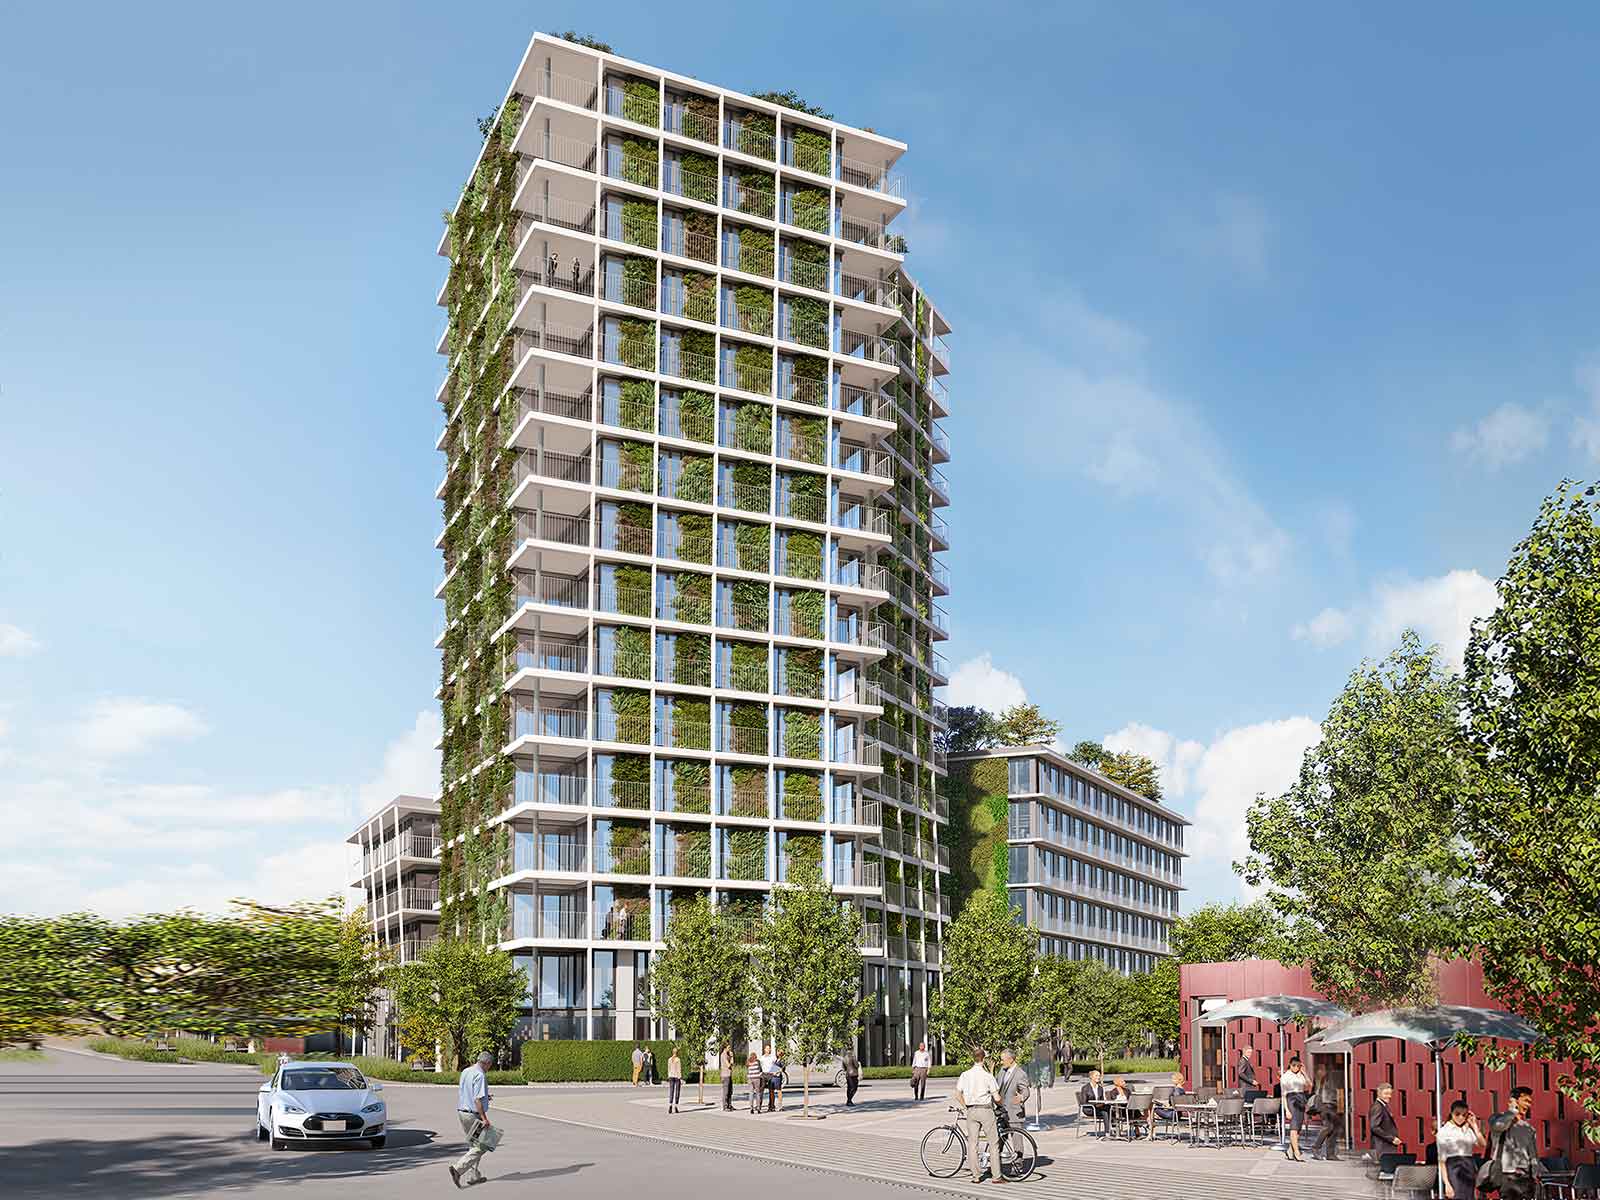 Bild für greencityWALL begrünt 52 Meter hohes grünes Hochhaus.